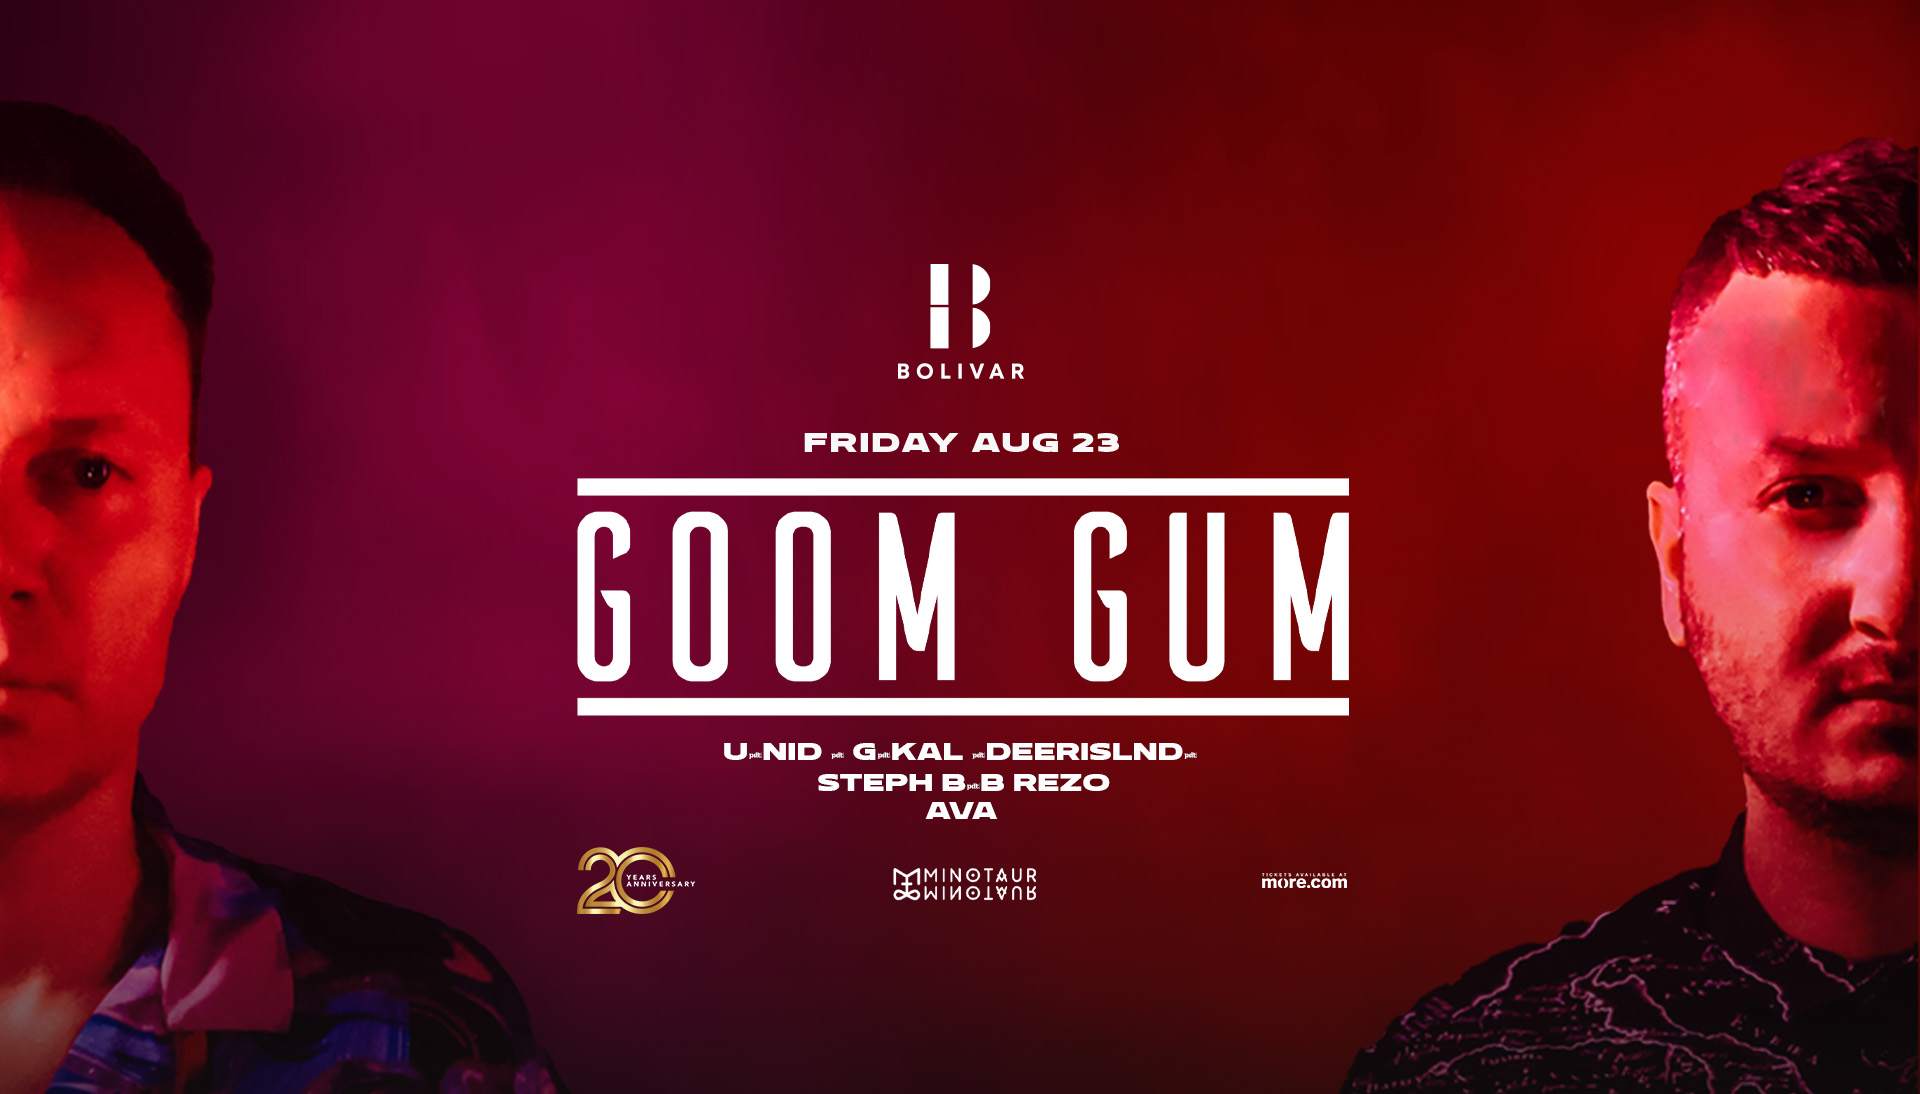 Goom Gum I Friday Aug 23 I Bolivar - Página frontal